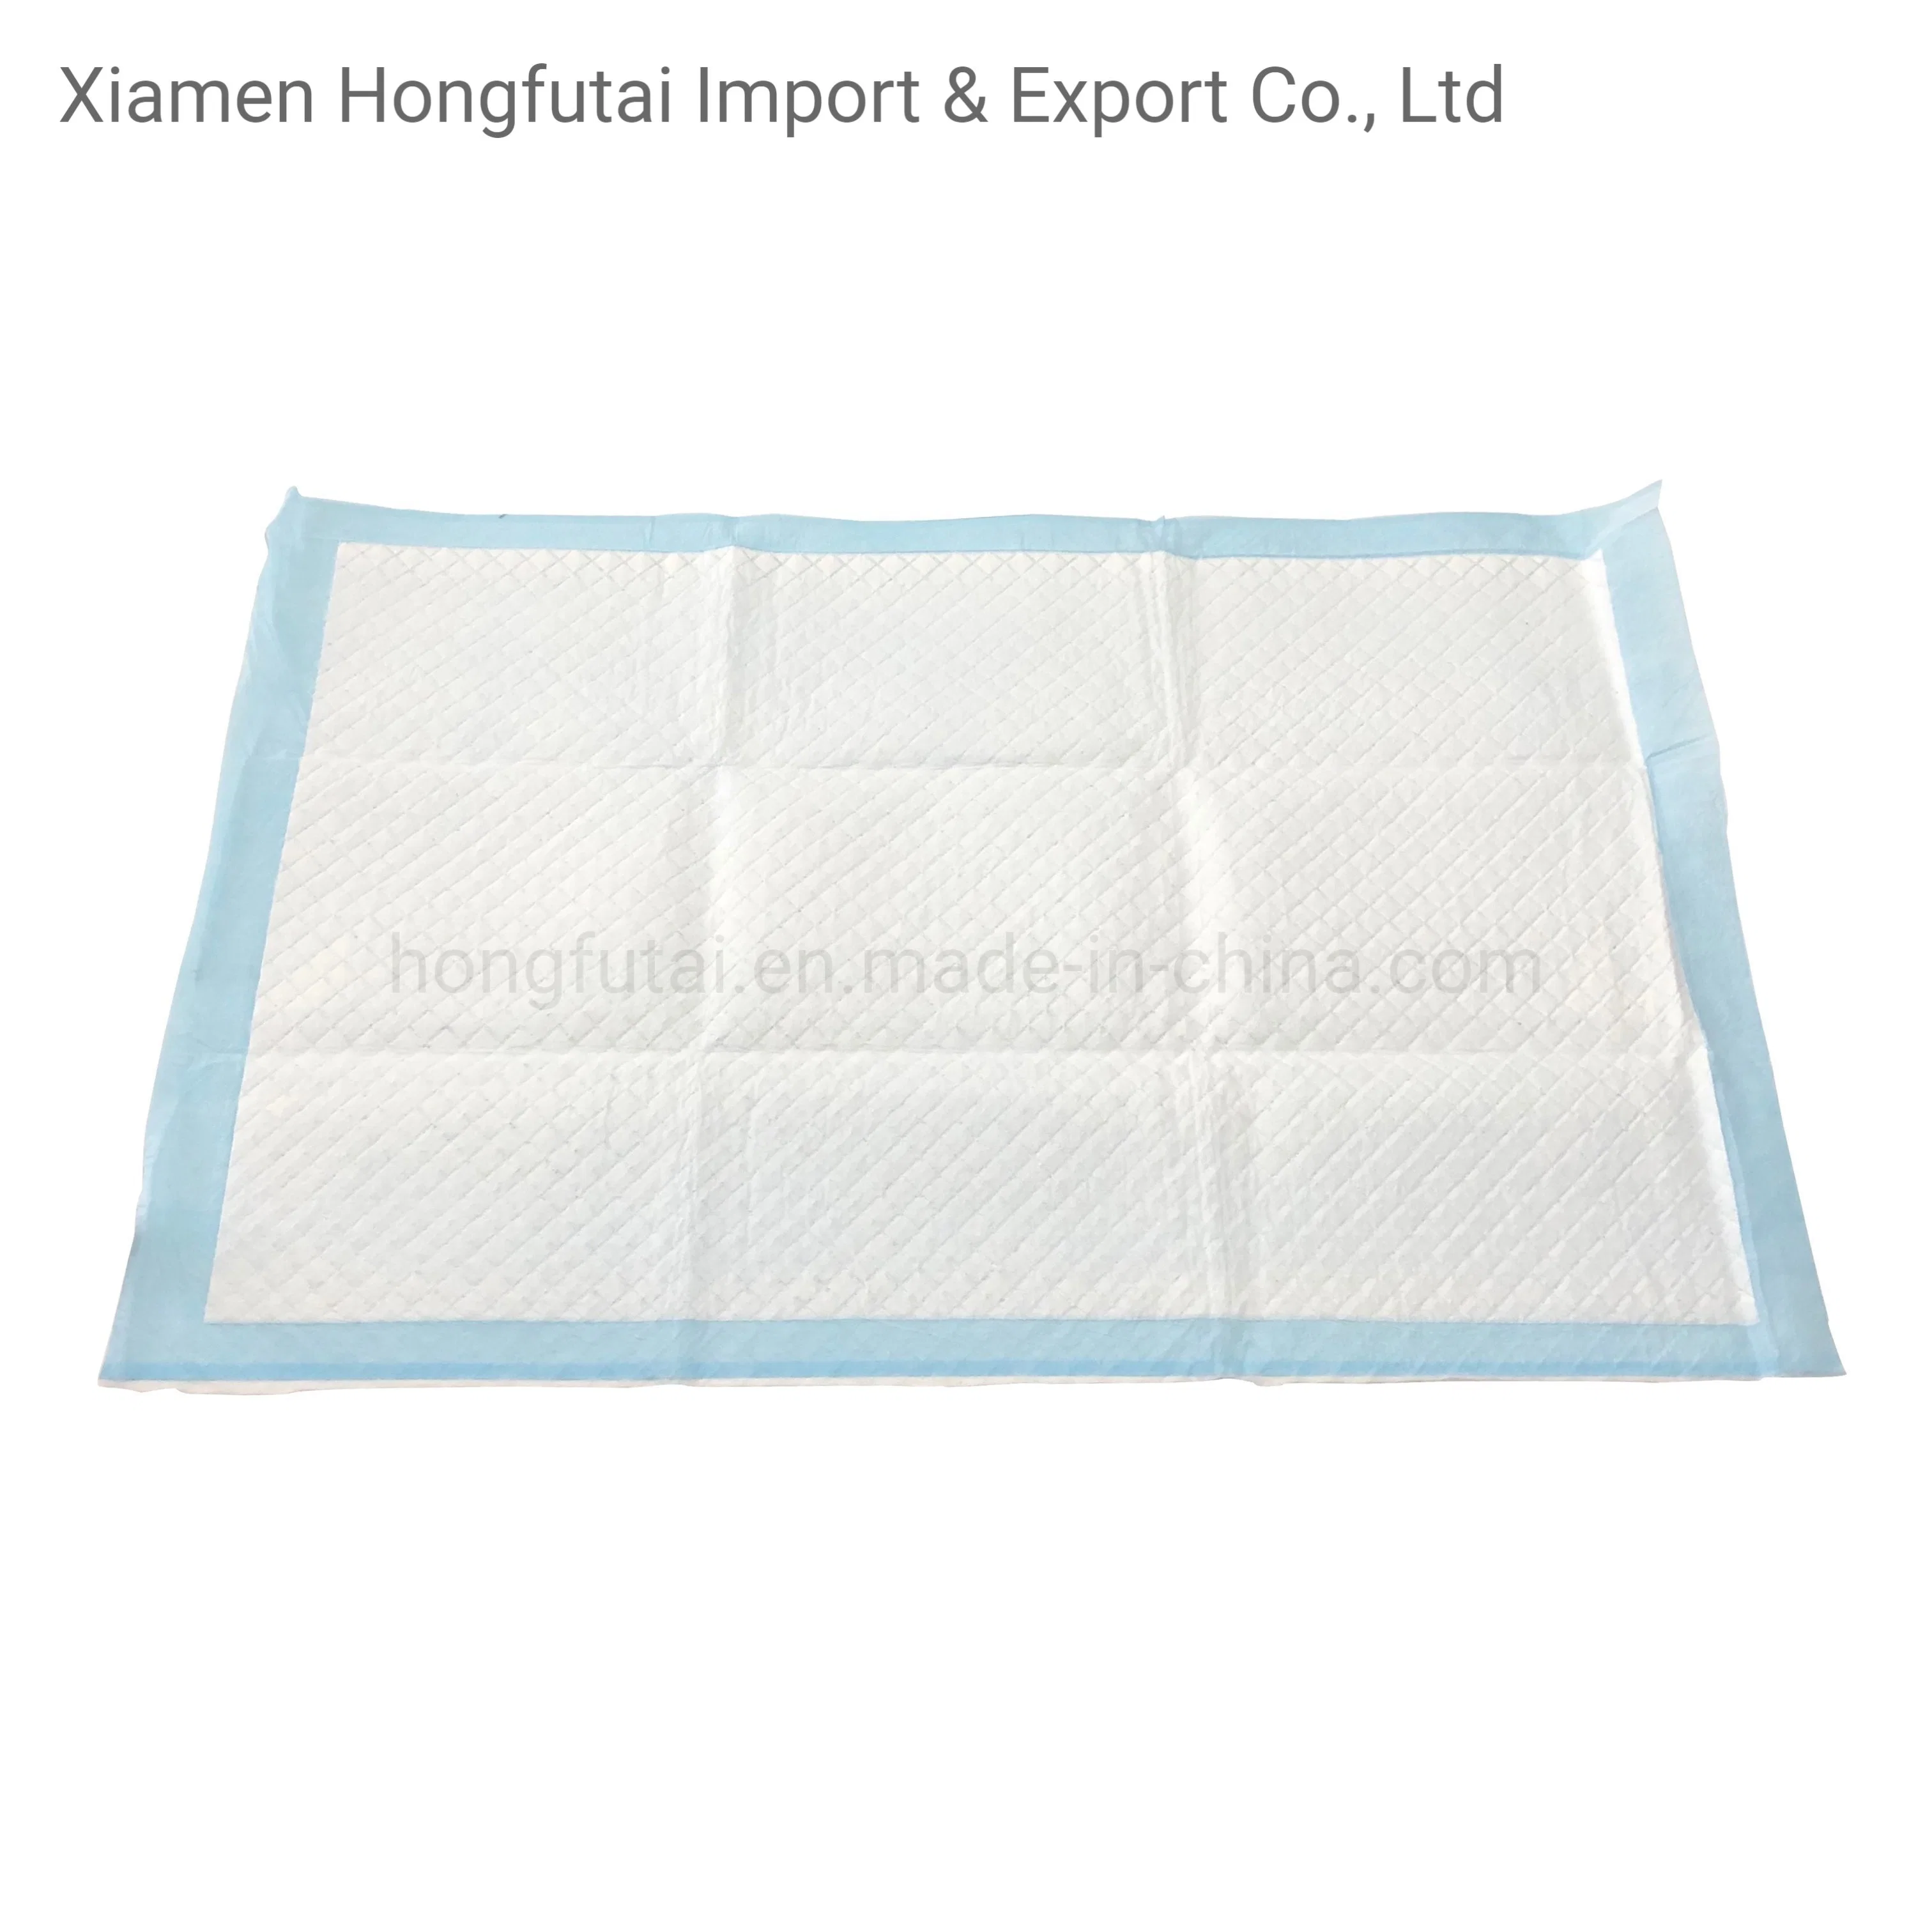 Großhandel/Lieferant Super Absorbierende Einweg Unbequem Hygiene Unterlage Blatt Unter Baby Pflege Bett Pad Hersteller für Frauen